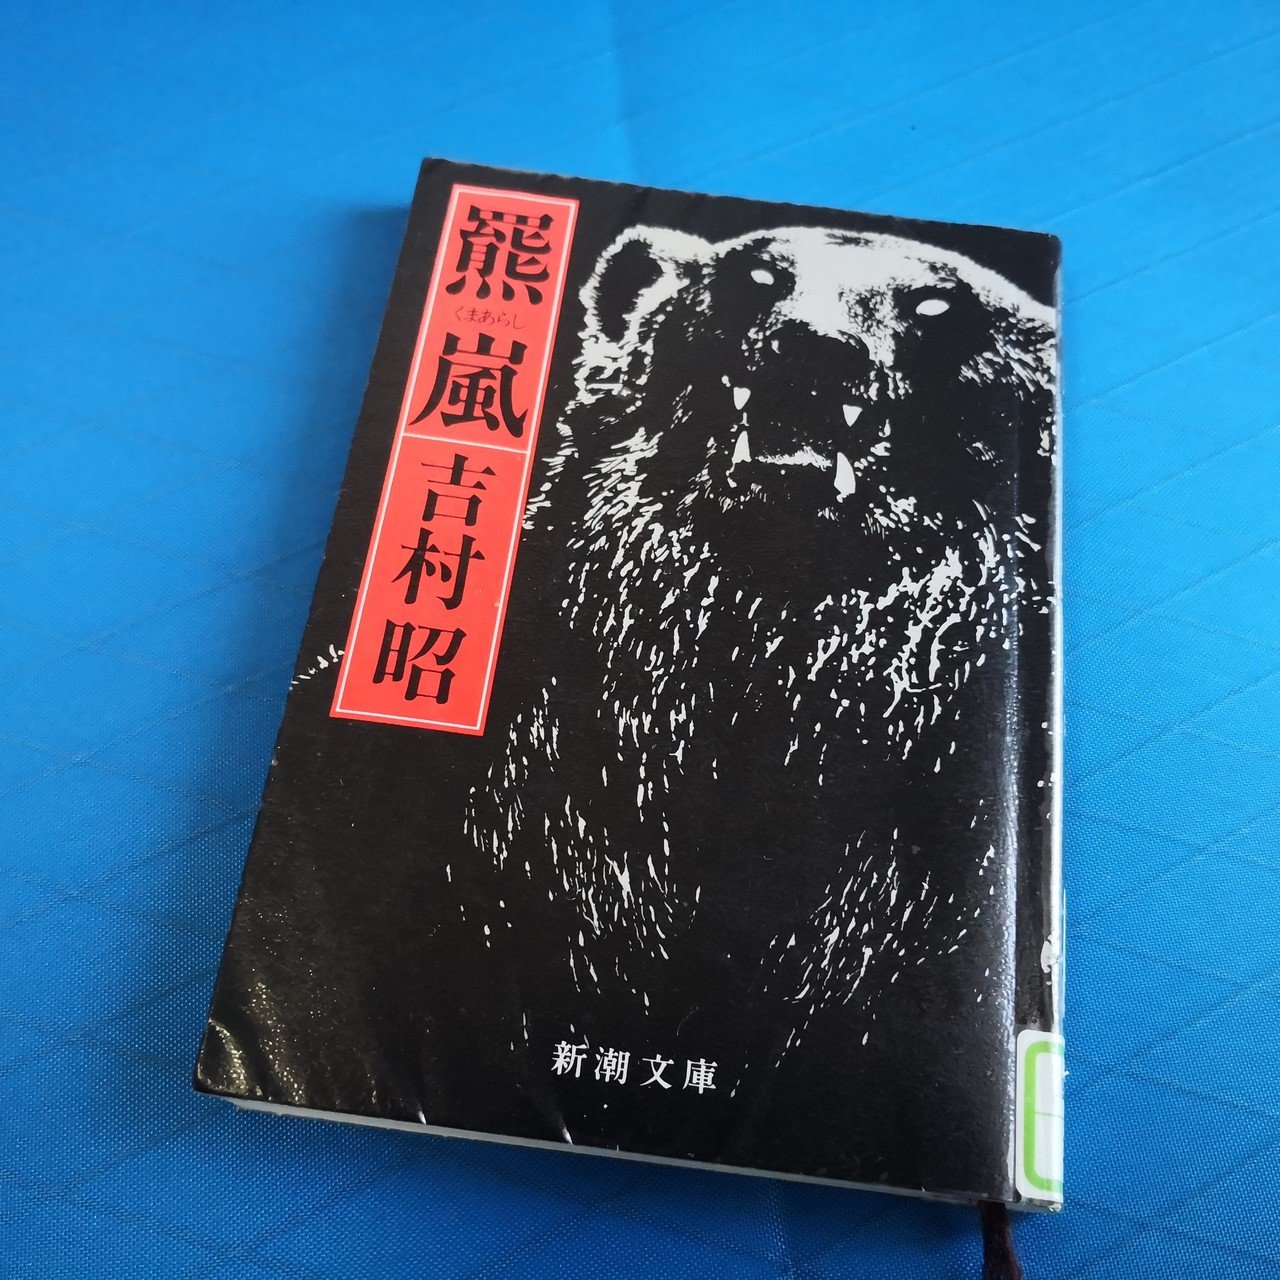 クマの性質を学ぶ。資料３『羆嵐』(吉村昭/新潮社)